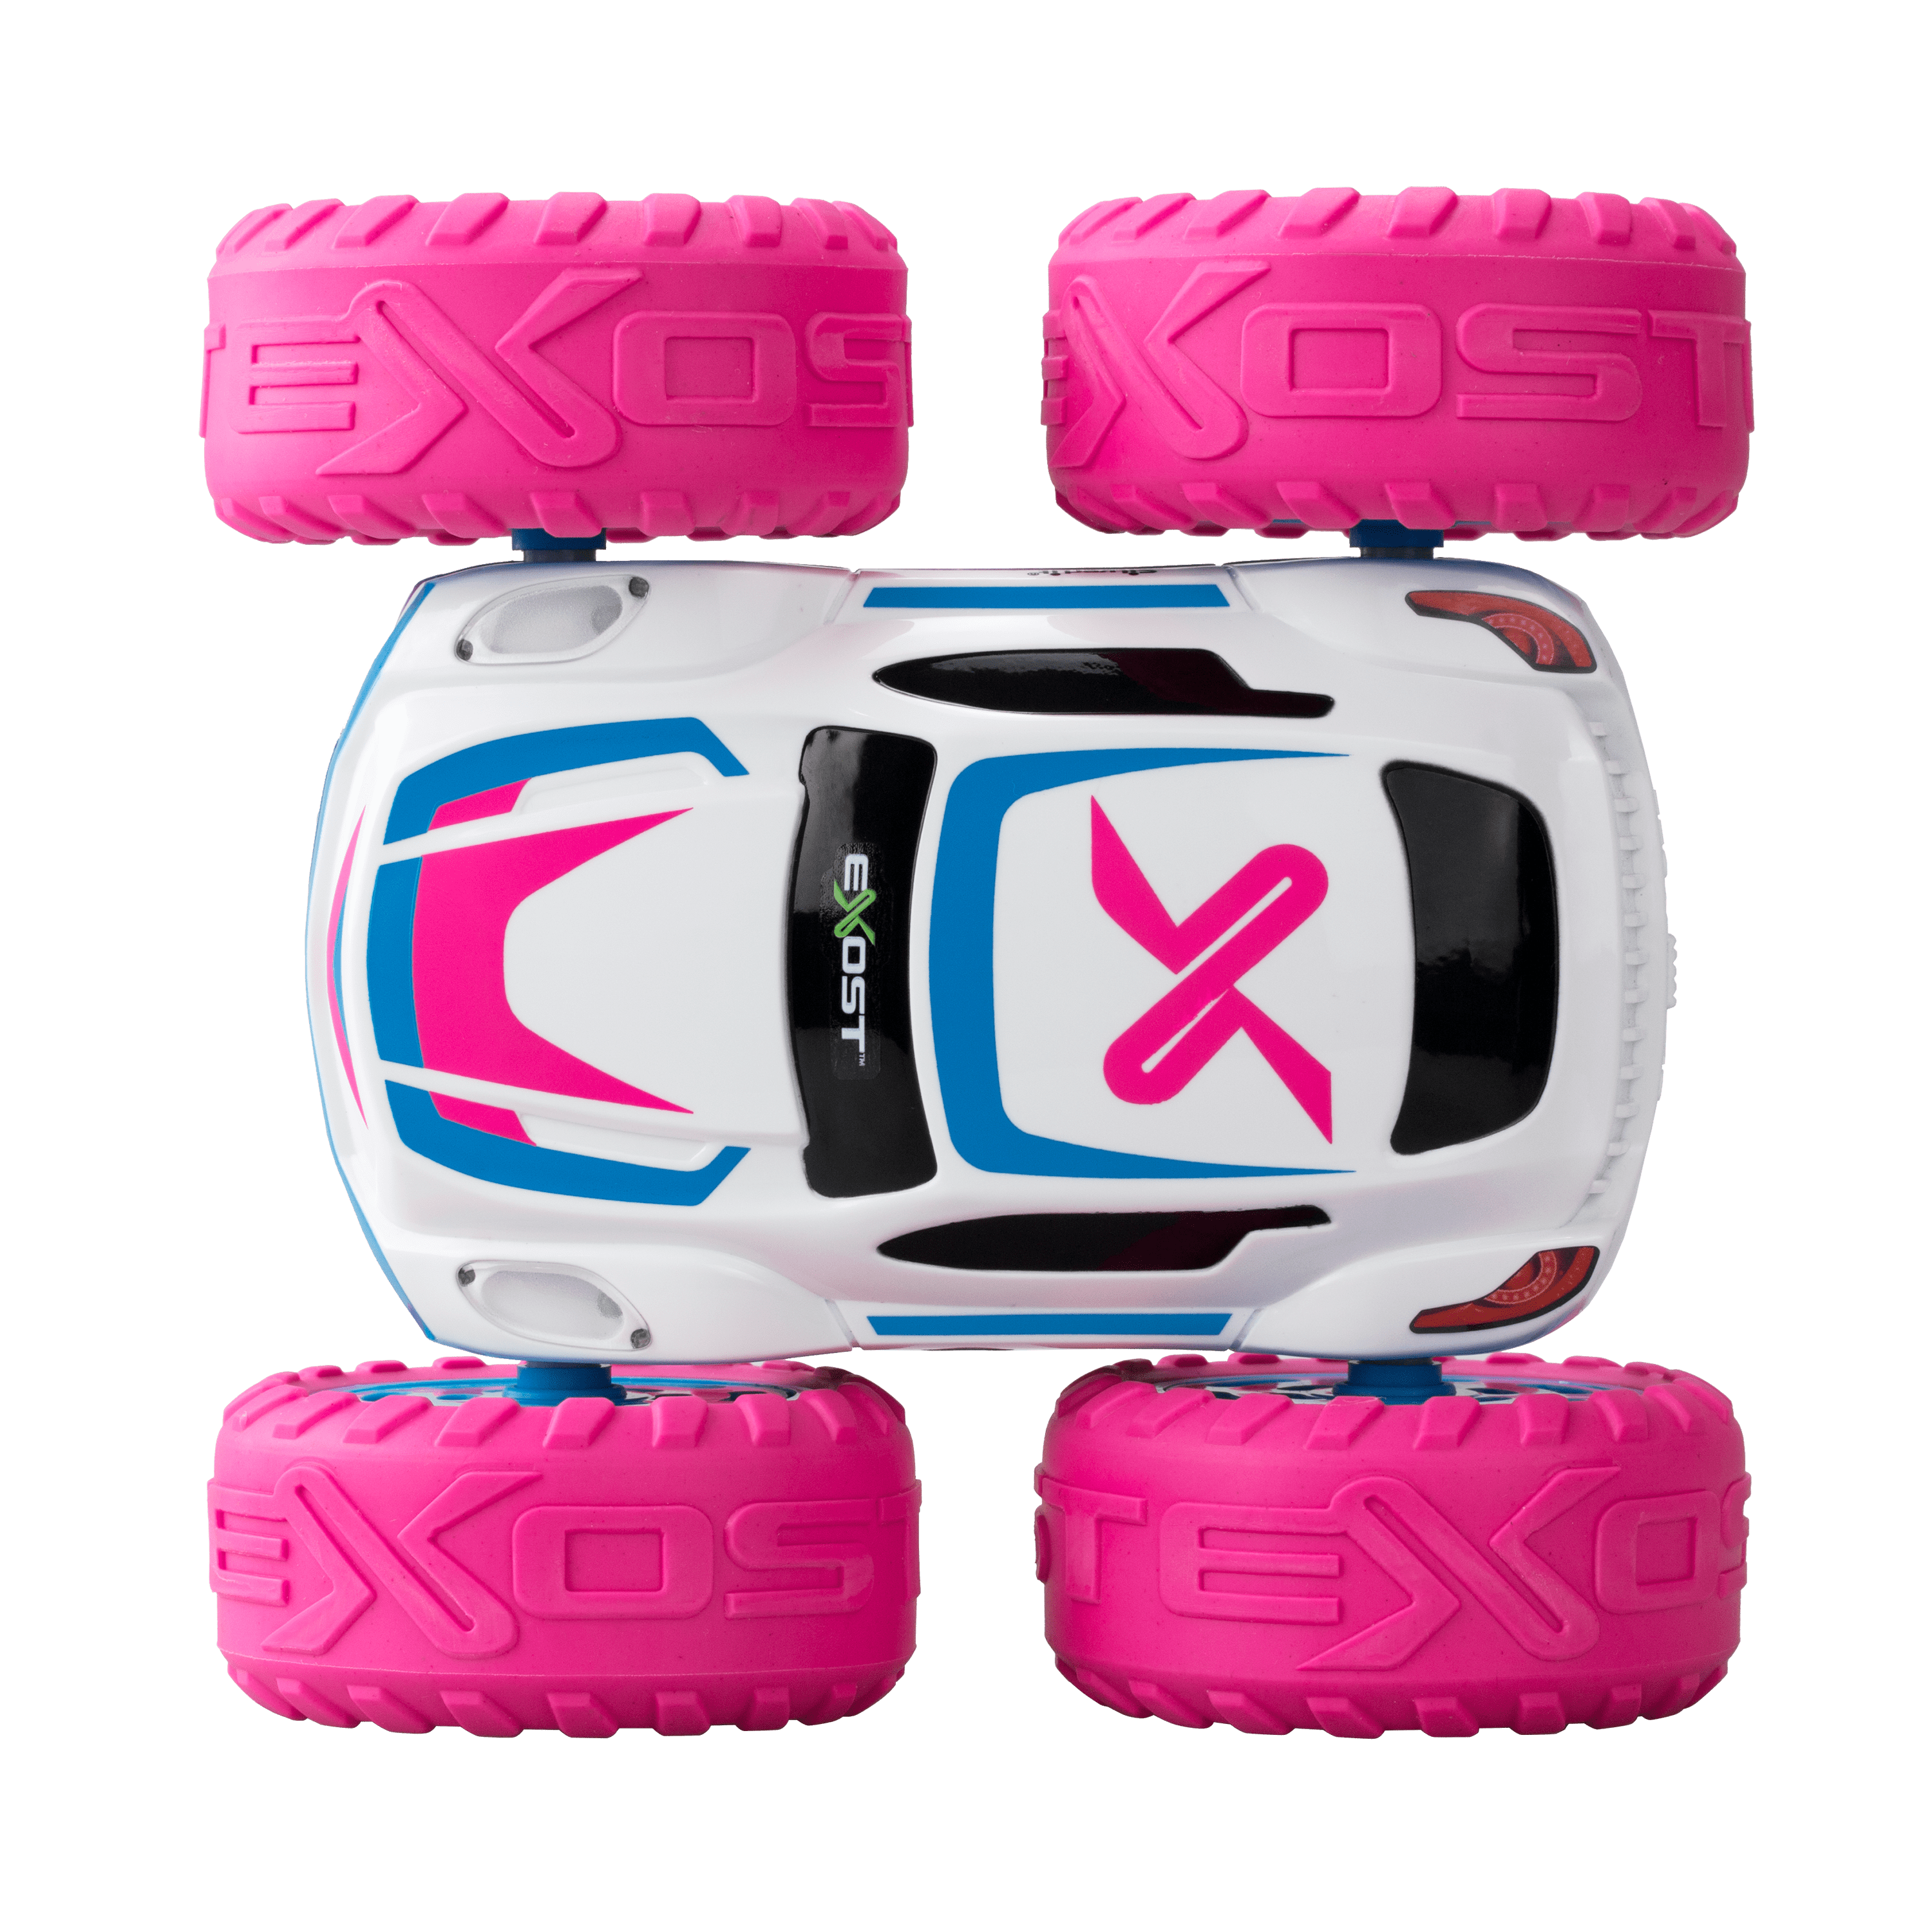 EXOST – Voiture télécommandée à batterie 360 CROSS rose – Silverlit